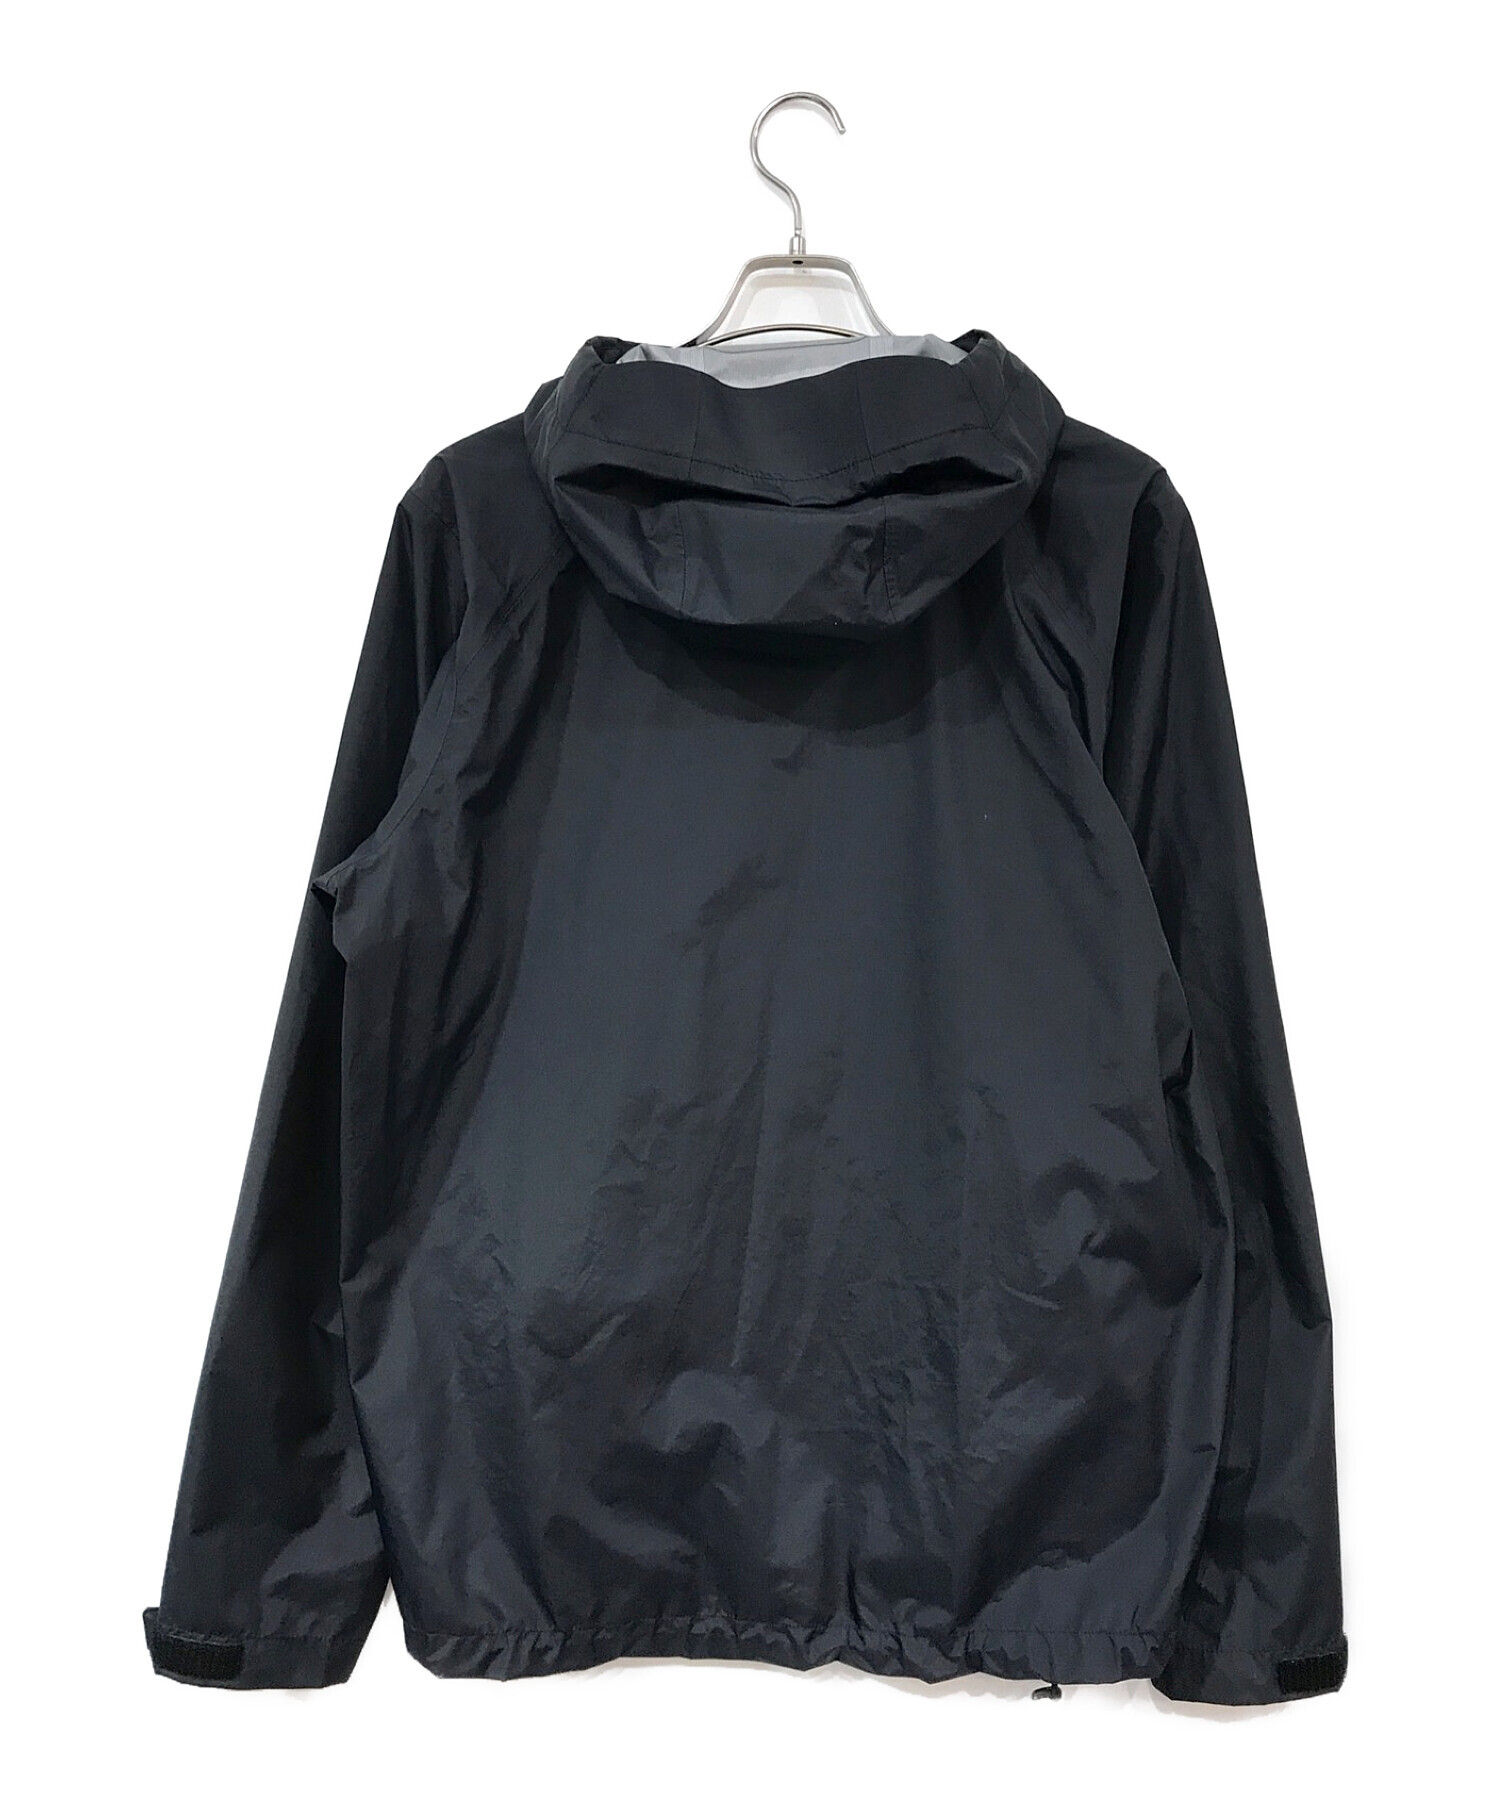 Patagonia (パタゴニア) トレントシェル3Lジャケット ブラック サイズ:Ｍ